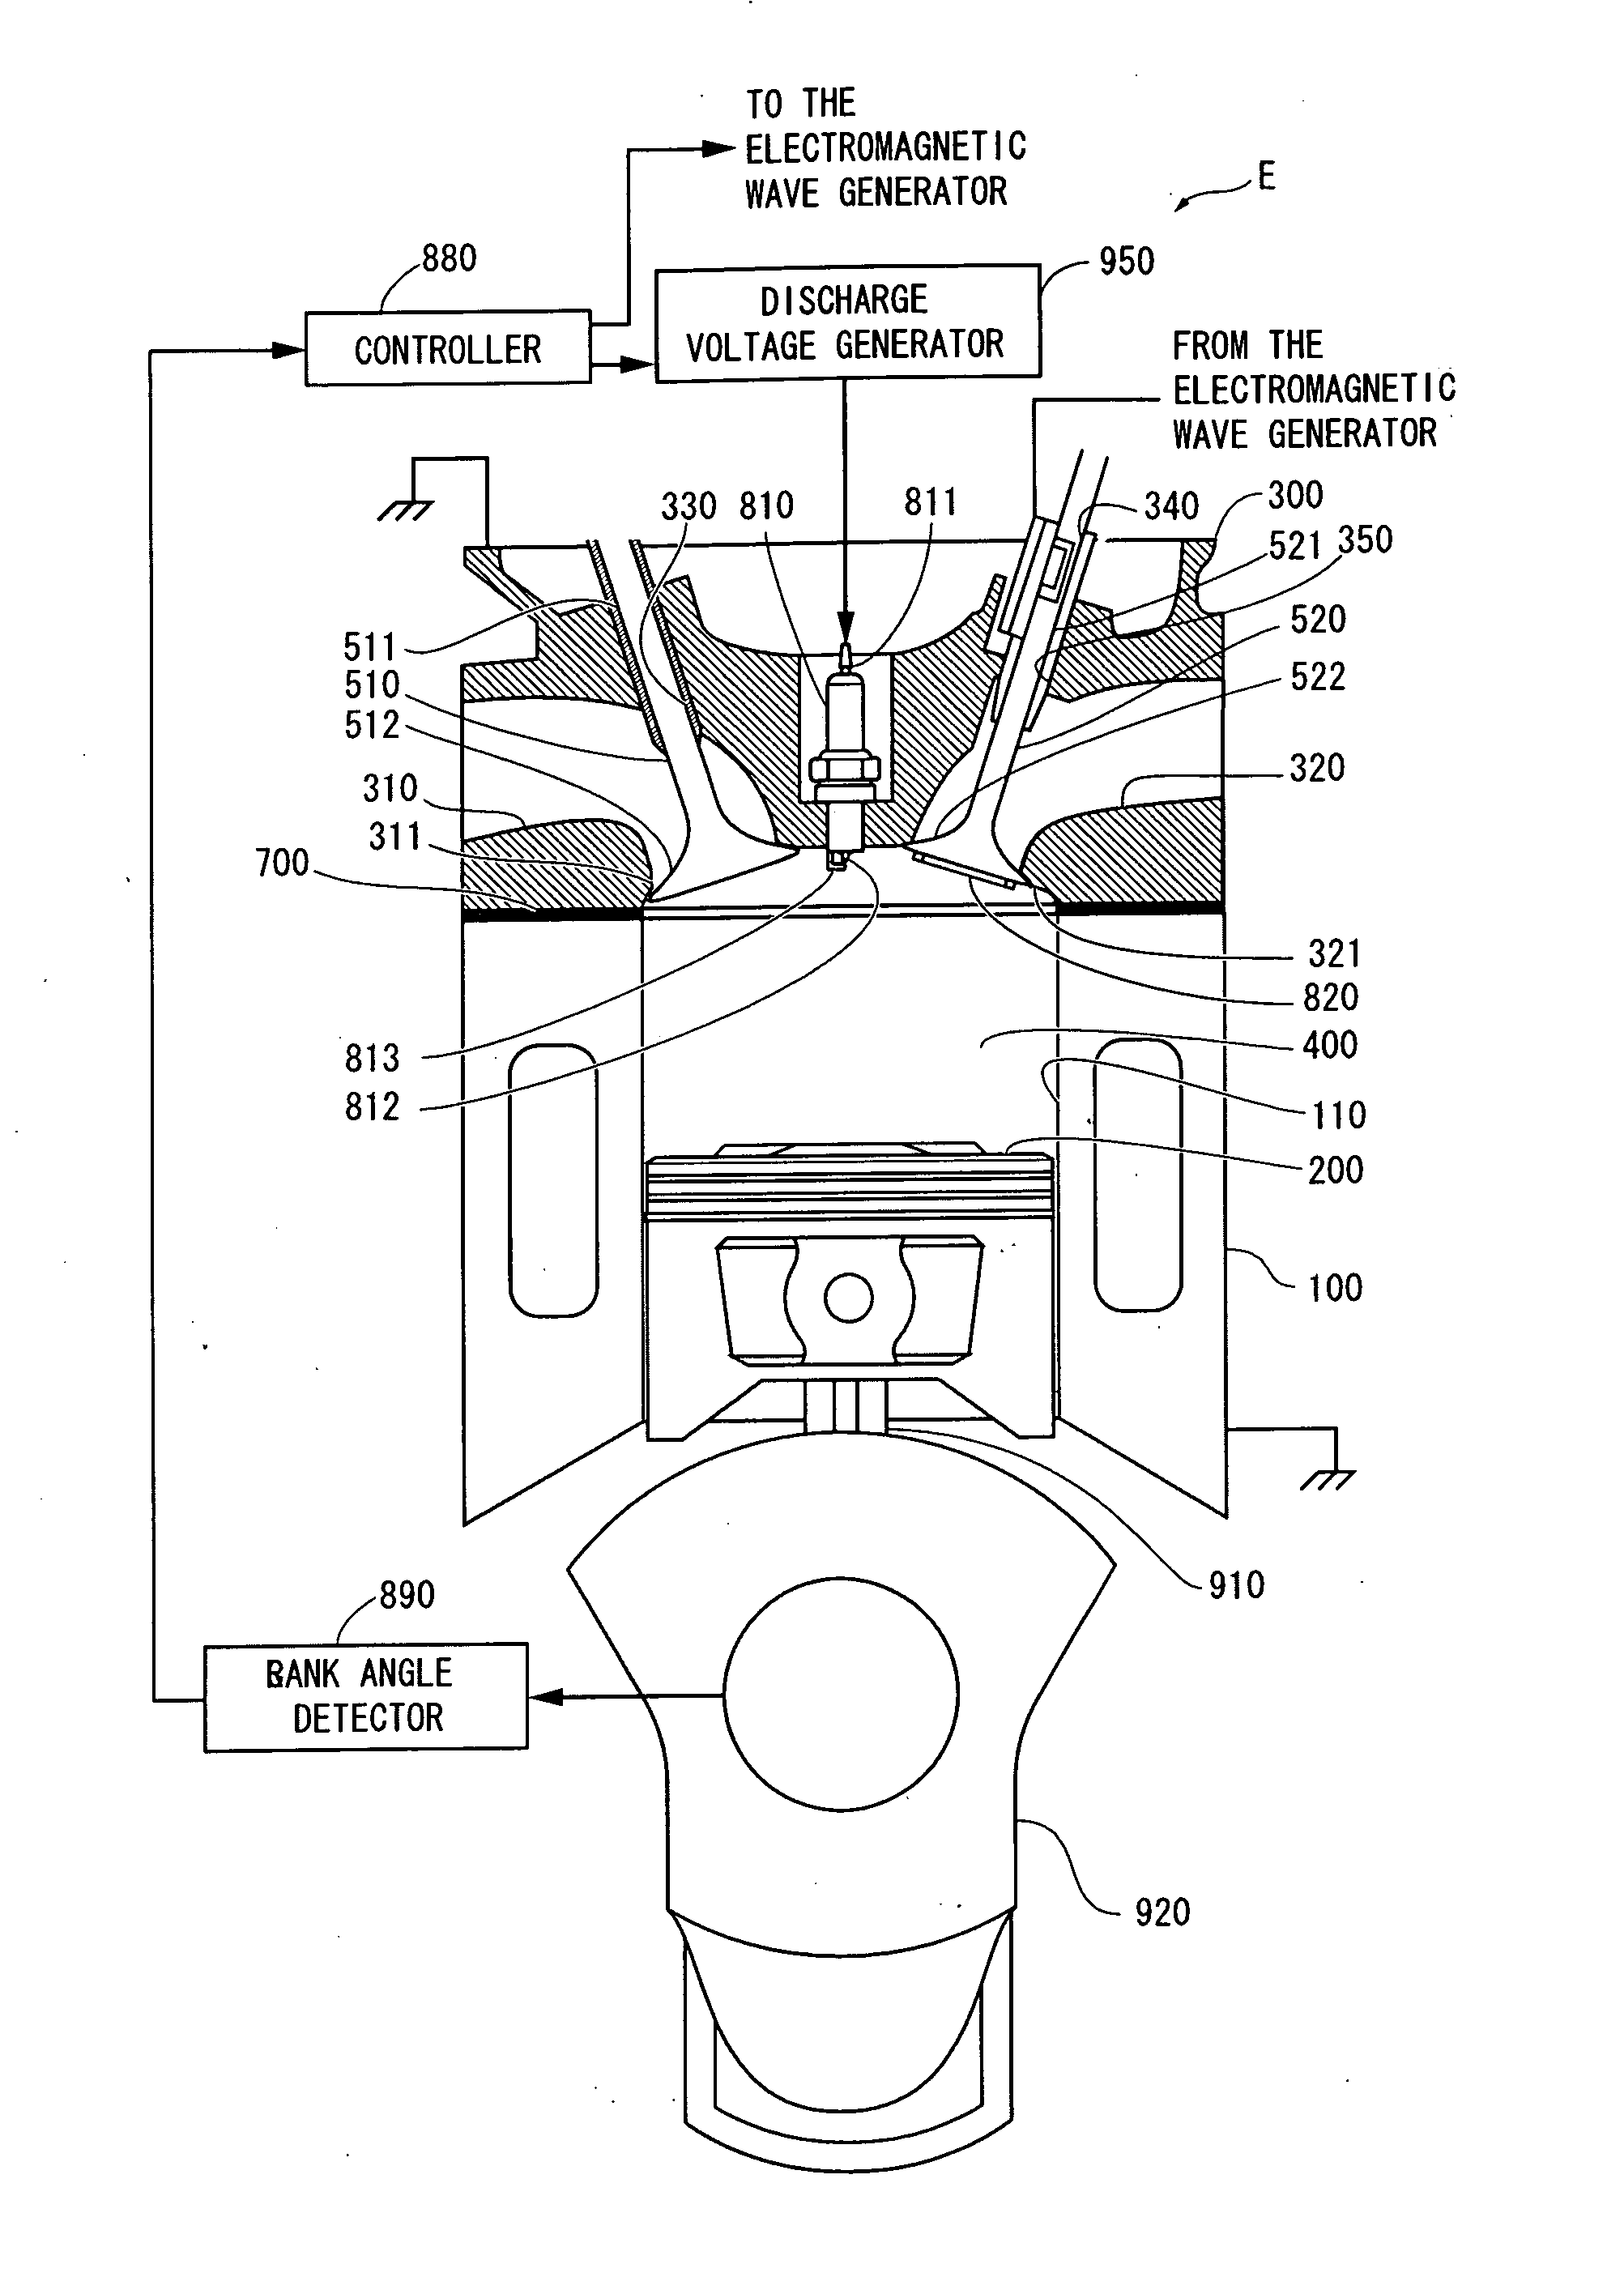 Plasma apparatus using a valve